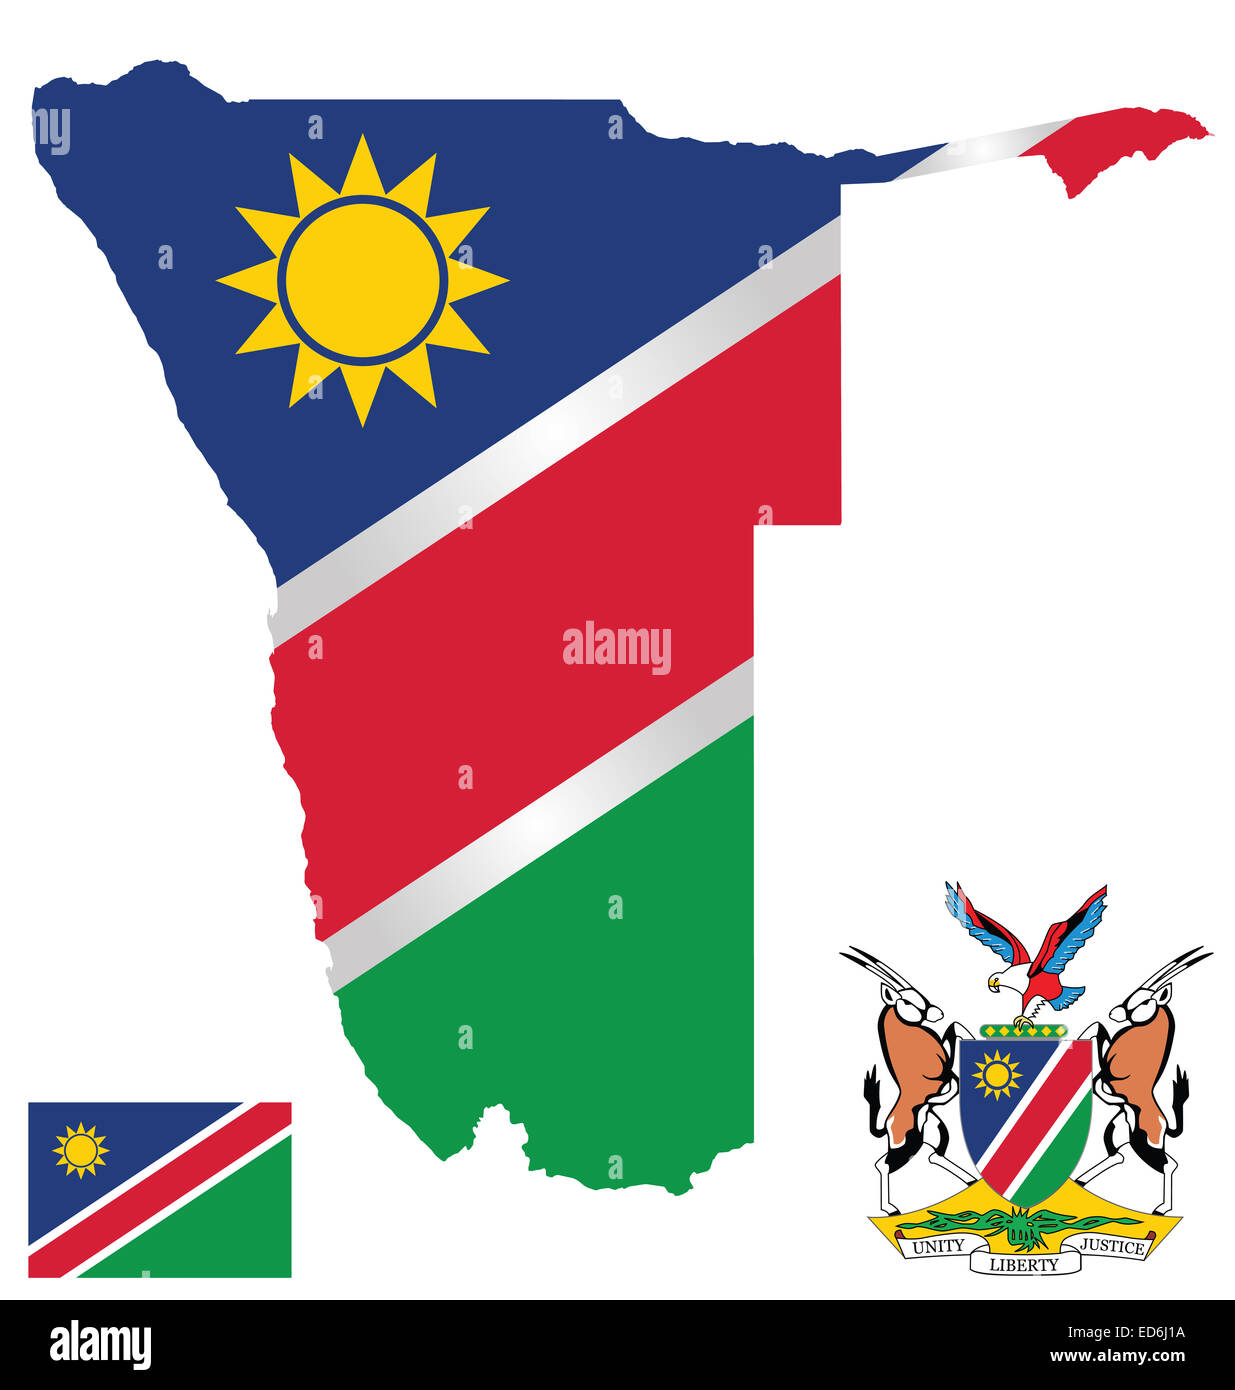 Flagge und Staatswappen der Republik Namibia überlagert, detaillierte Übersichtskarte Stockfoto